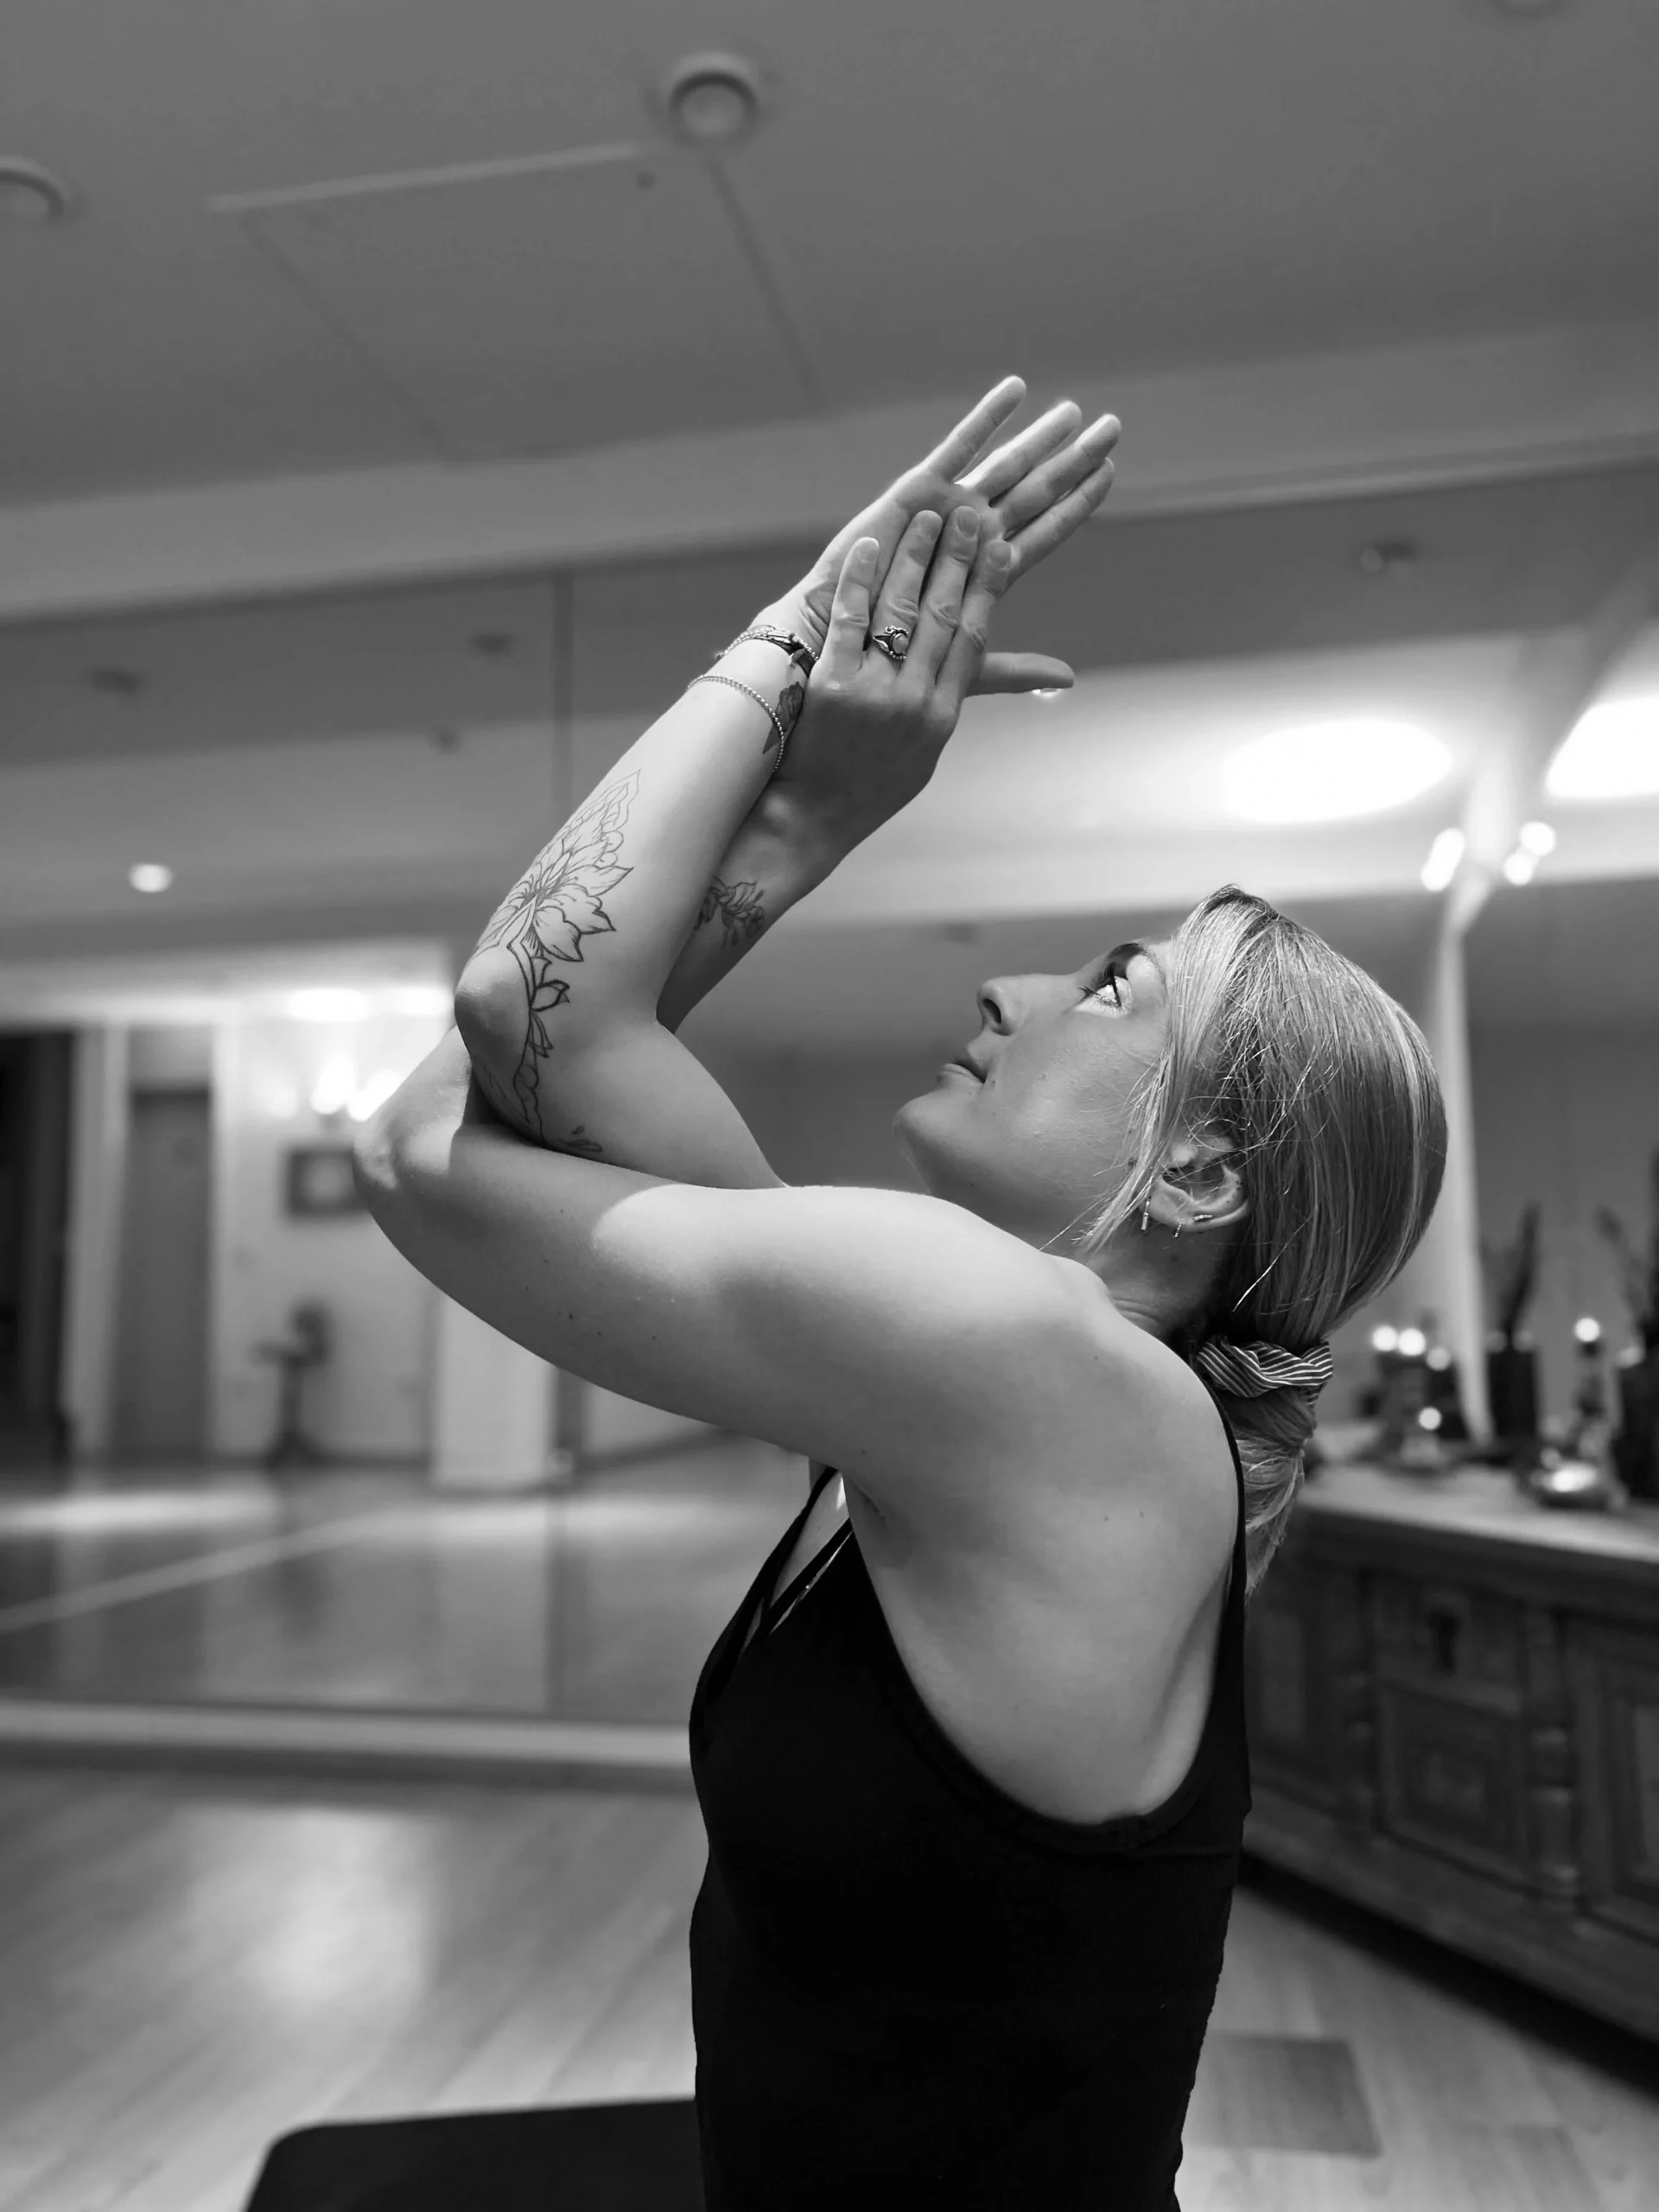 Yoga ist für mich ein ganzheitliches Körpergefühl und eine Möglichkeit, die Verbindung zu mir selbst zu stärken. Es ist für mich nicht nur eine Praxis, sondern ein Lebensstil voller Achtsamkeit & Wachstum. Meine Klassen sind eine Einladung, die Gedanken zur Ruhe kommen zu lassen, indem wir uns bewusst bewegen, die Atmung fokussieren und ins Spüren kommen.